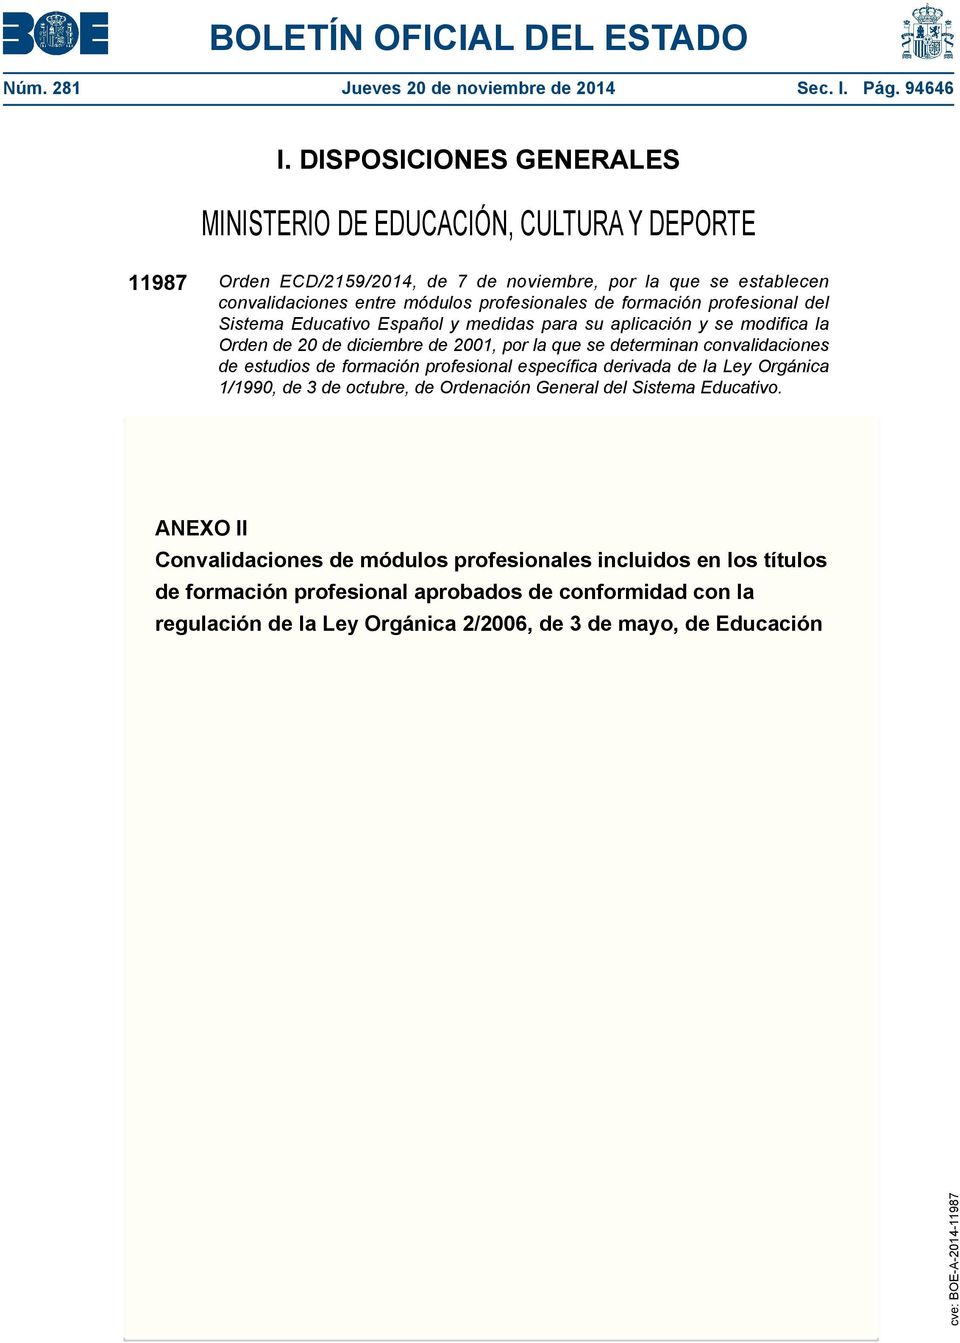 profesional del Sistema Educativo Español y medidas para su aplicación y se modifica la Orden de 20 de diciembre de 2001, por la que se determinan convalidaciones de estudios de formación profesional